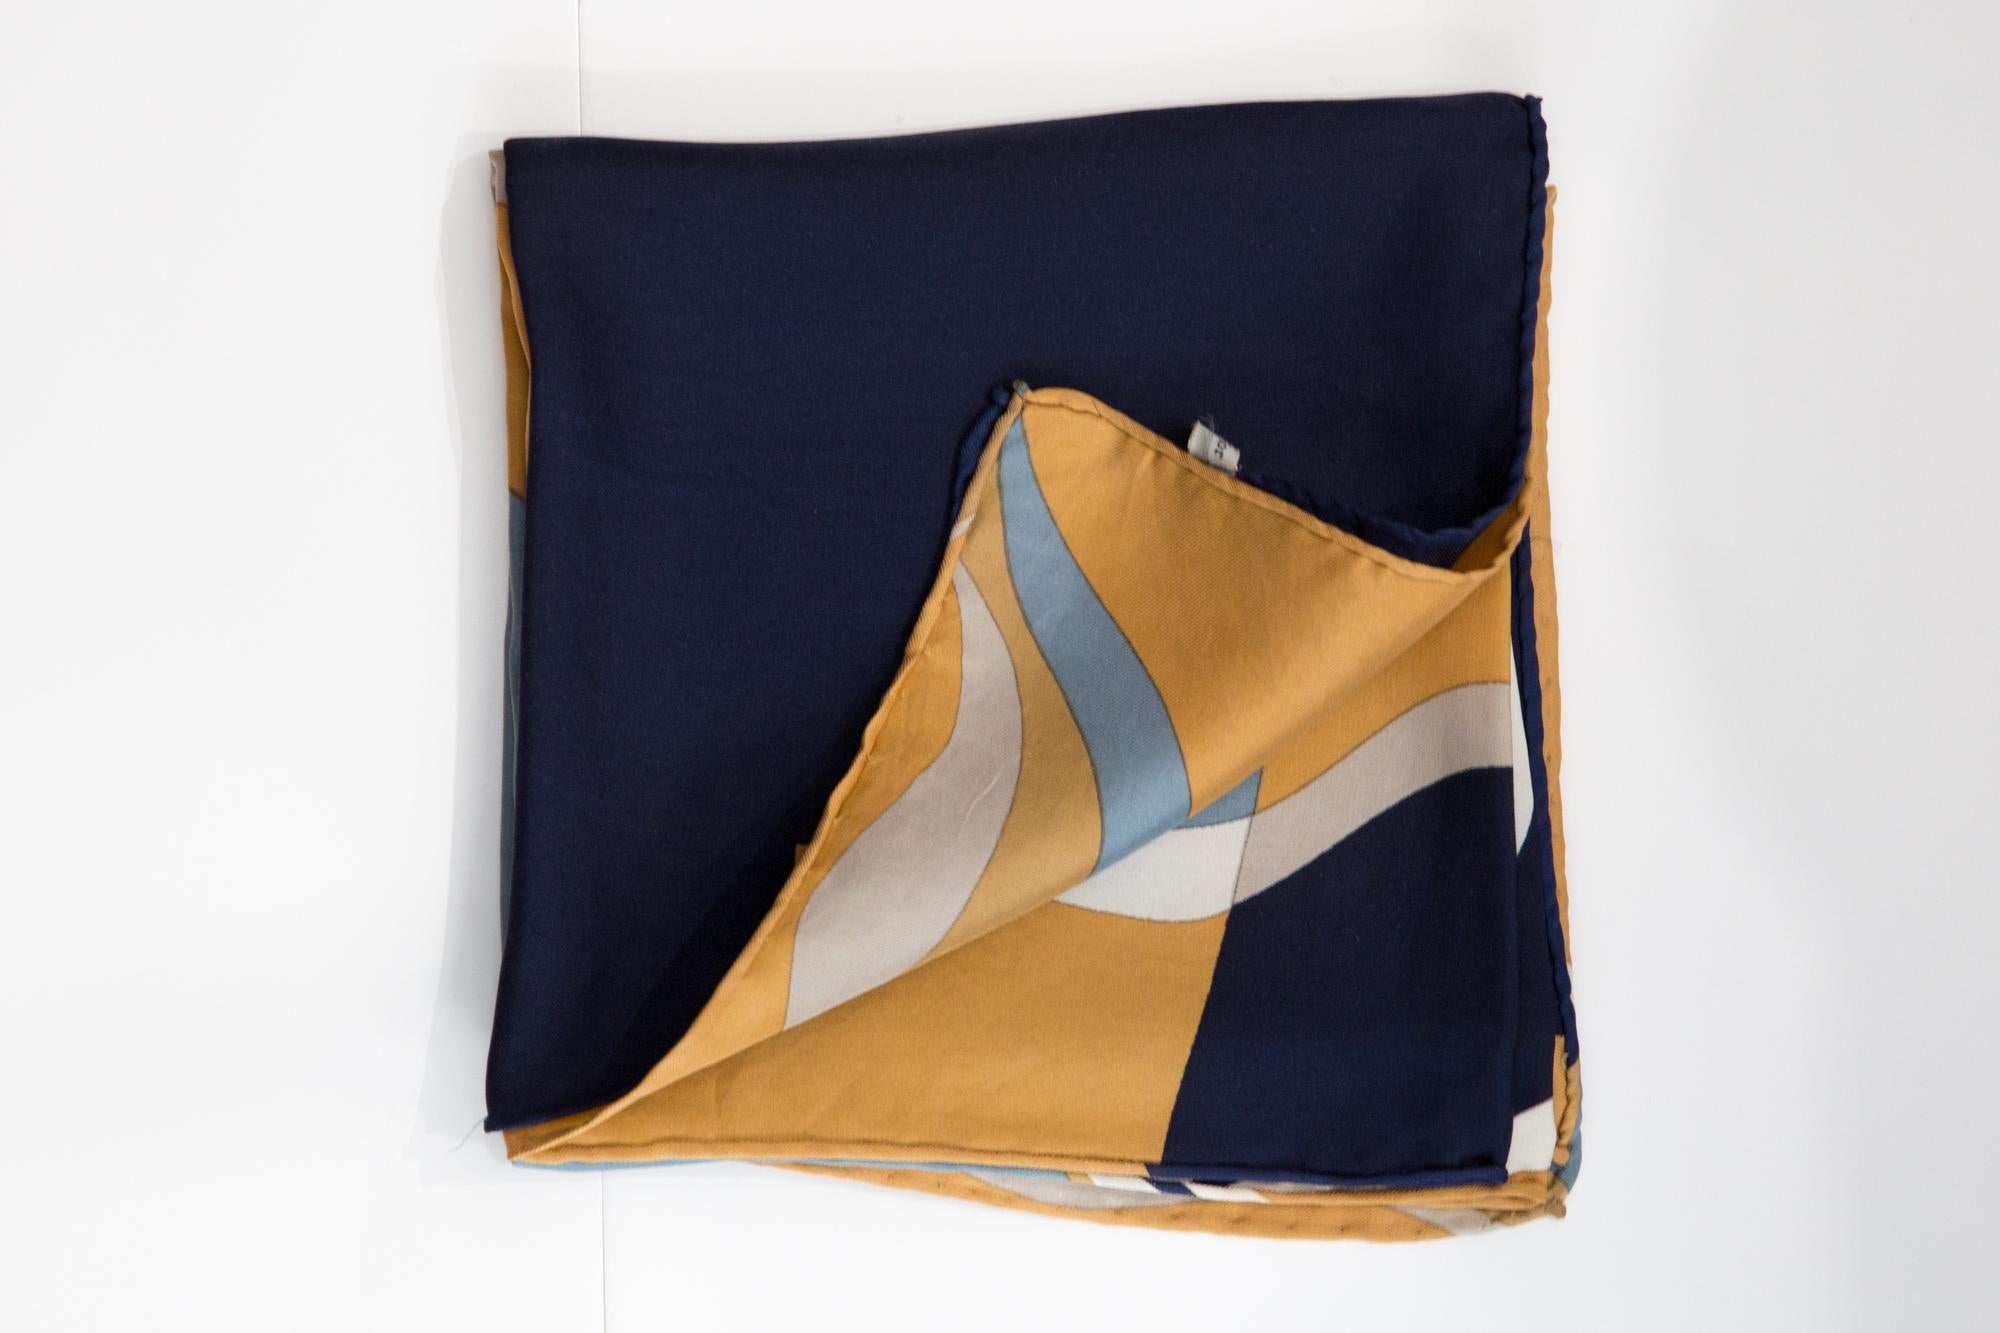 Christian Dior Seidenschal mit geometrischem, hypnotisierendem marineblauem Print, ein Markenzeichen von Christian Dior. 
Circa 1970er Jahre
In gutem Vintage-Zustand. Hergestellt in Frankreich.
77 cm (30 Zoll) x 77 cm (30 Zoll)
Wir garantieren